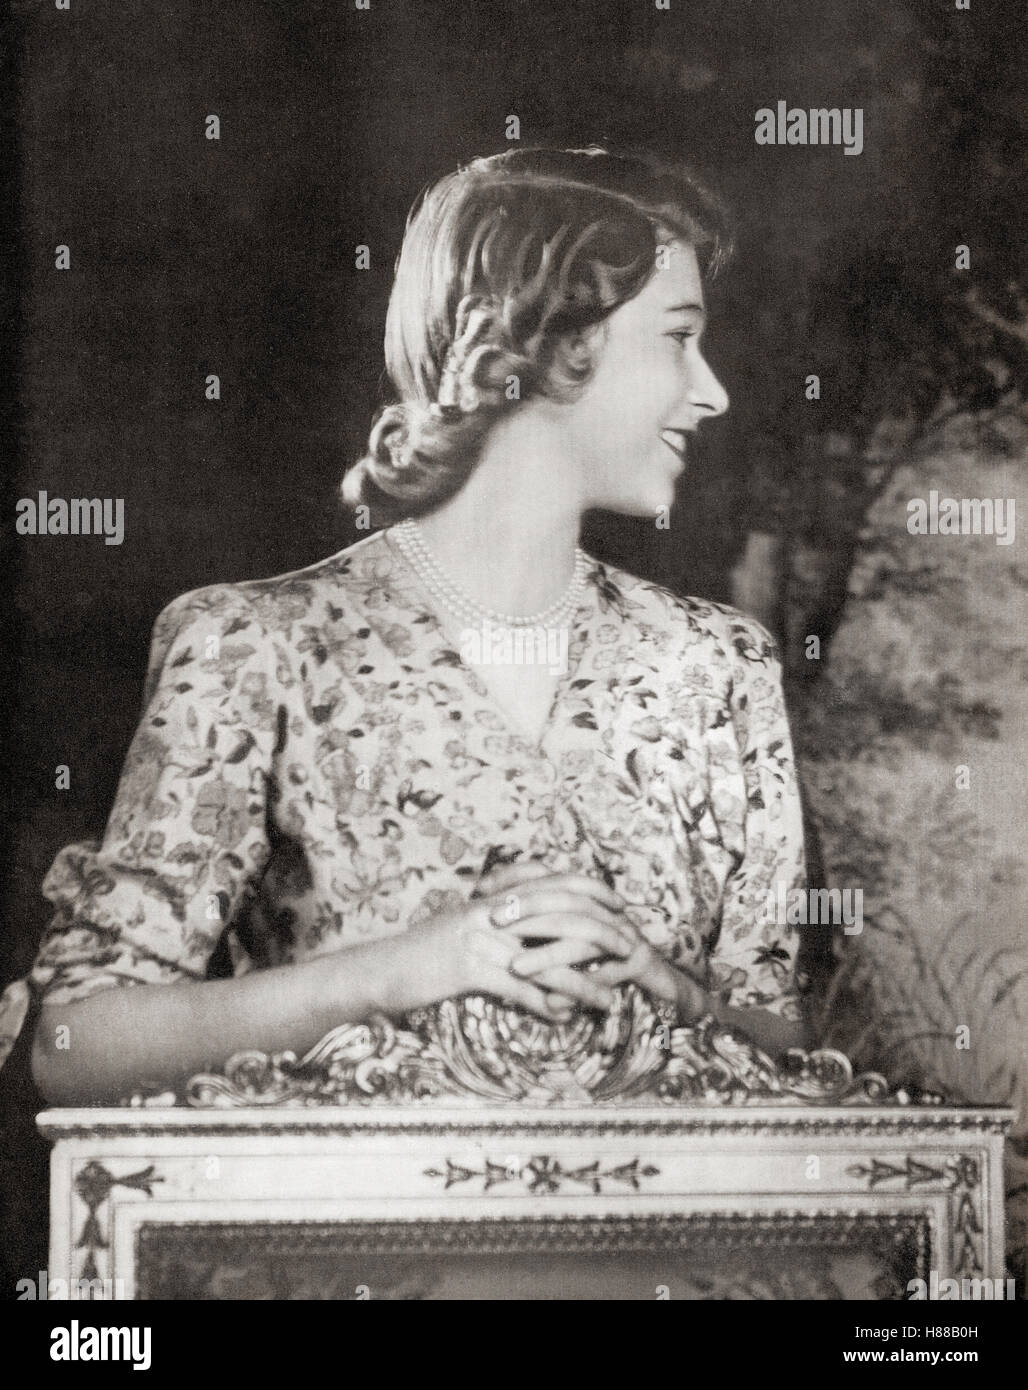 Prinzessin Elisabeth, zukünftige Elisabeth II., 1926 - 2022. Königin des Vereinigten Königreichs, Kanada, Australien und Neuseeland. Hier zu ihrem 18.. Geburtstag im Jahr 1944. Von einem Foto. Stockfoto